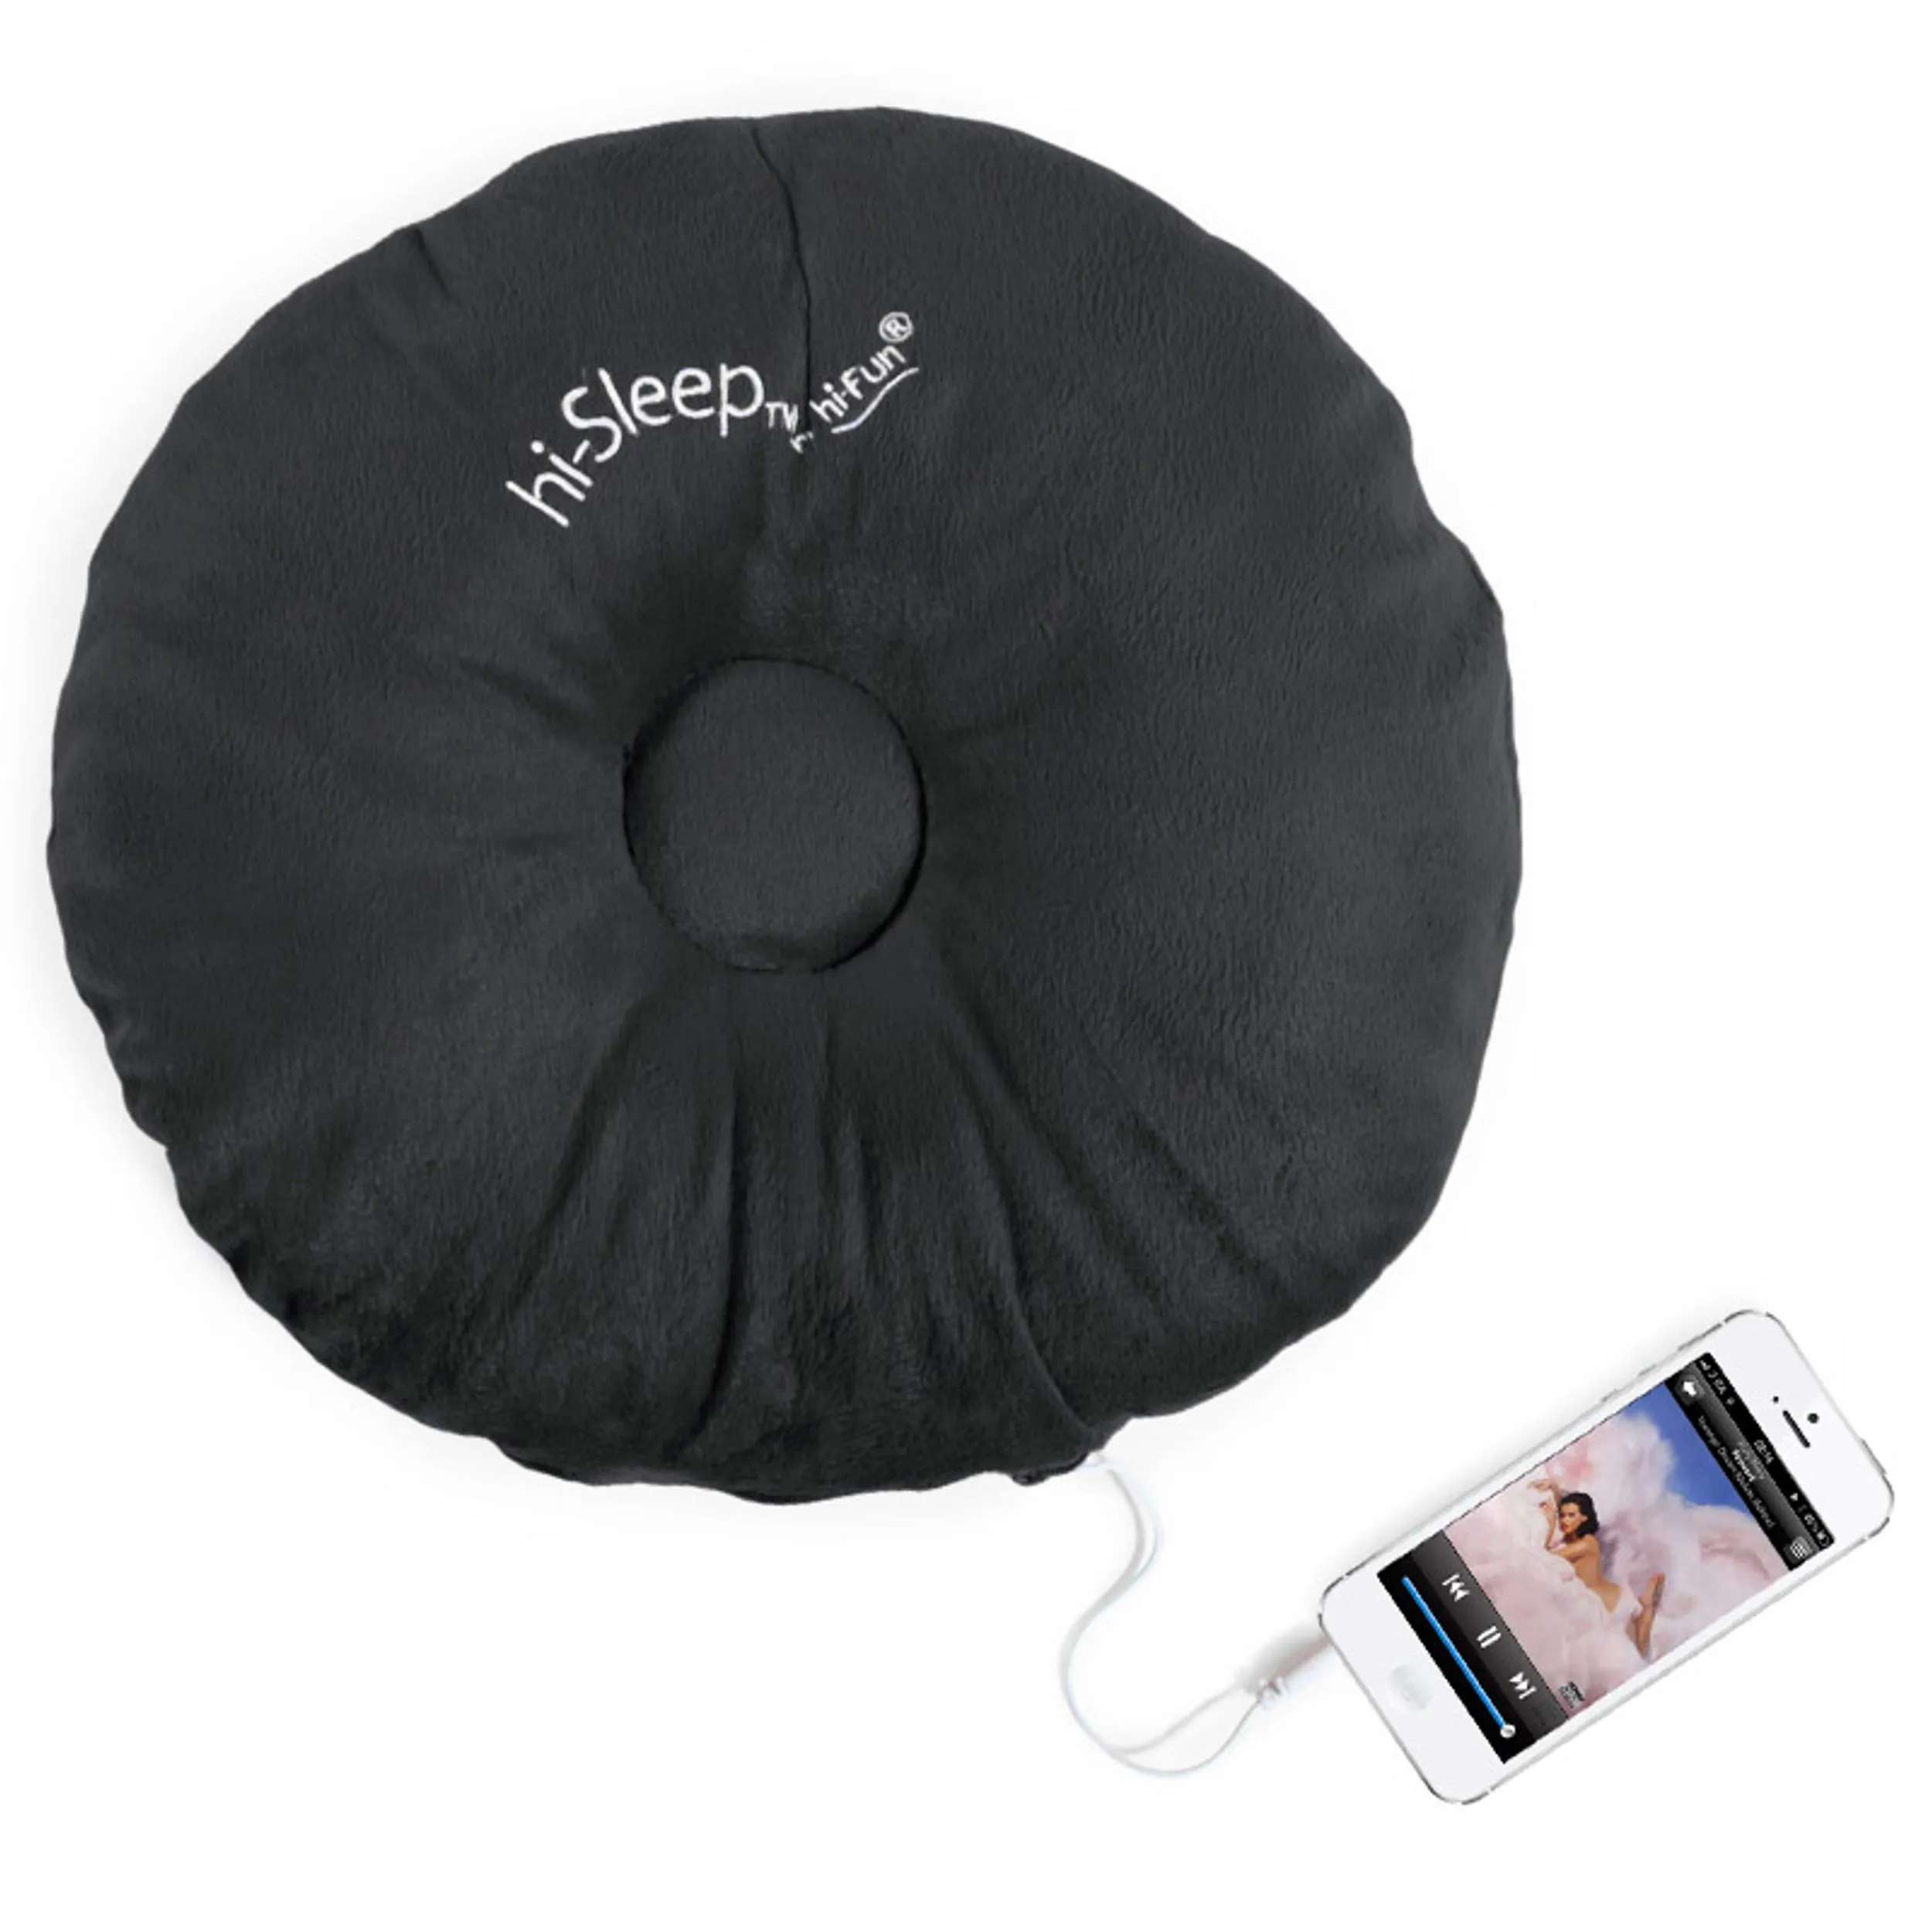 Cuscino con altoparlante HI SLEEP che diffonde musica da qualsiasi dispositivo dotato di jack universale da 3,5mm nero